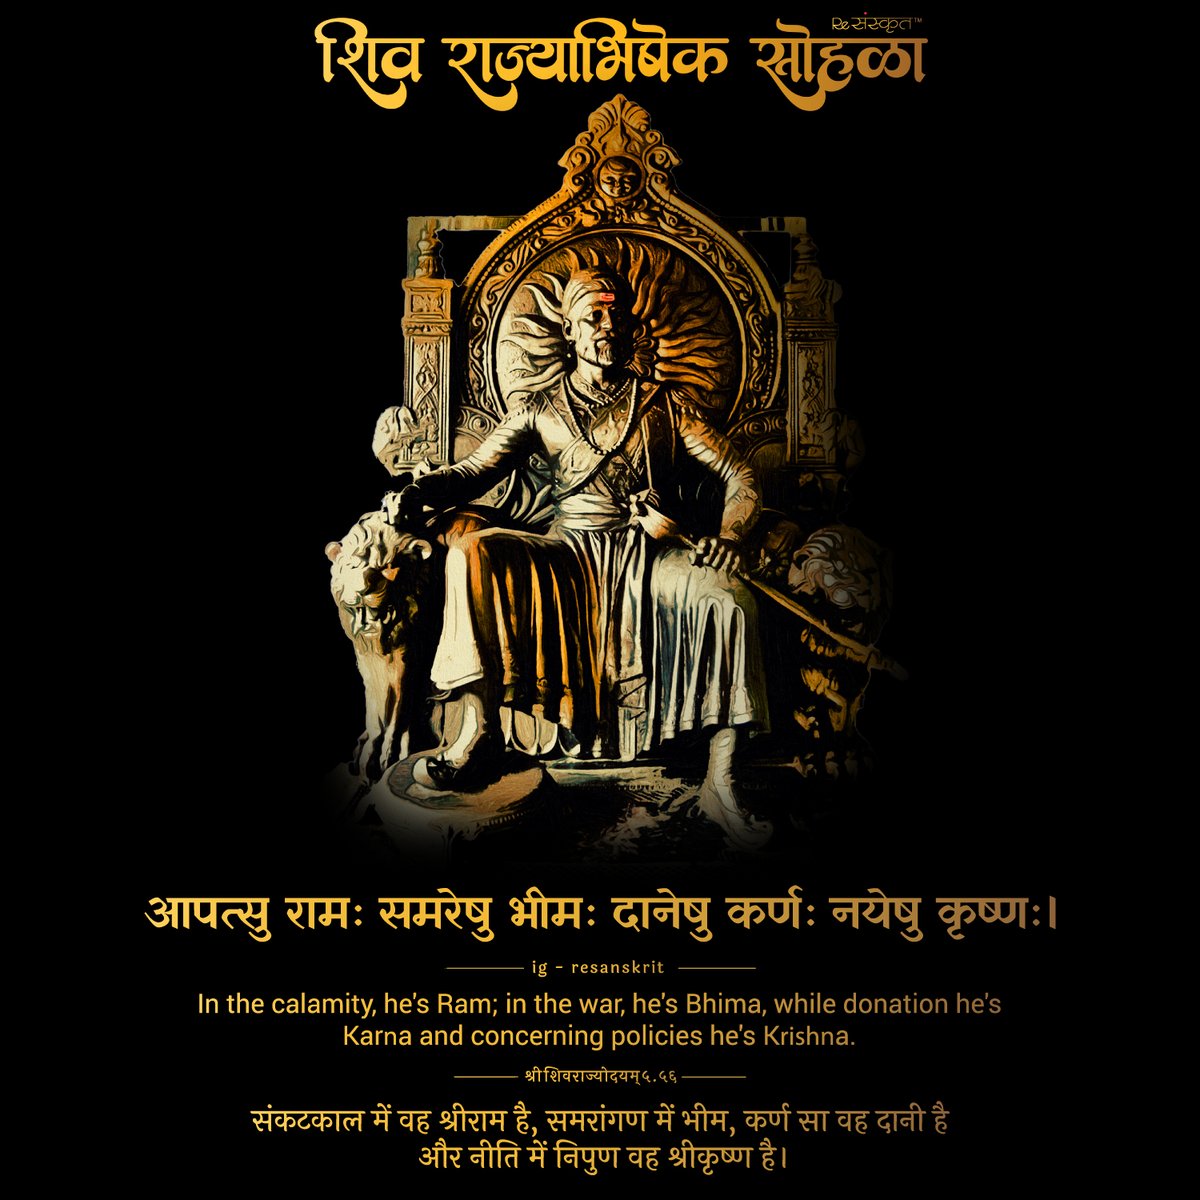 Celebrating the start of true Hindavi Swarajya! 
#sanskrit #Rajyabhishek #shivajimaharaj #raigad #fort #killa #maharaj #shivajimaharajhistory #maharaja #chatrapatishivajimaharaj  #sahyadri #sambhajimaharaj #chatrapati #aamhi__shivbhakt